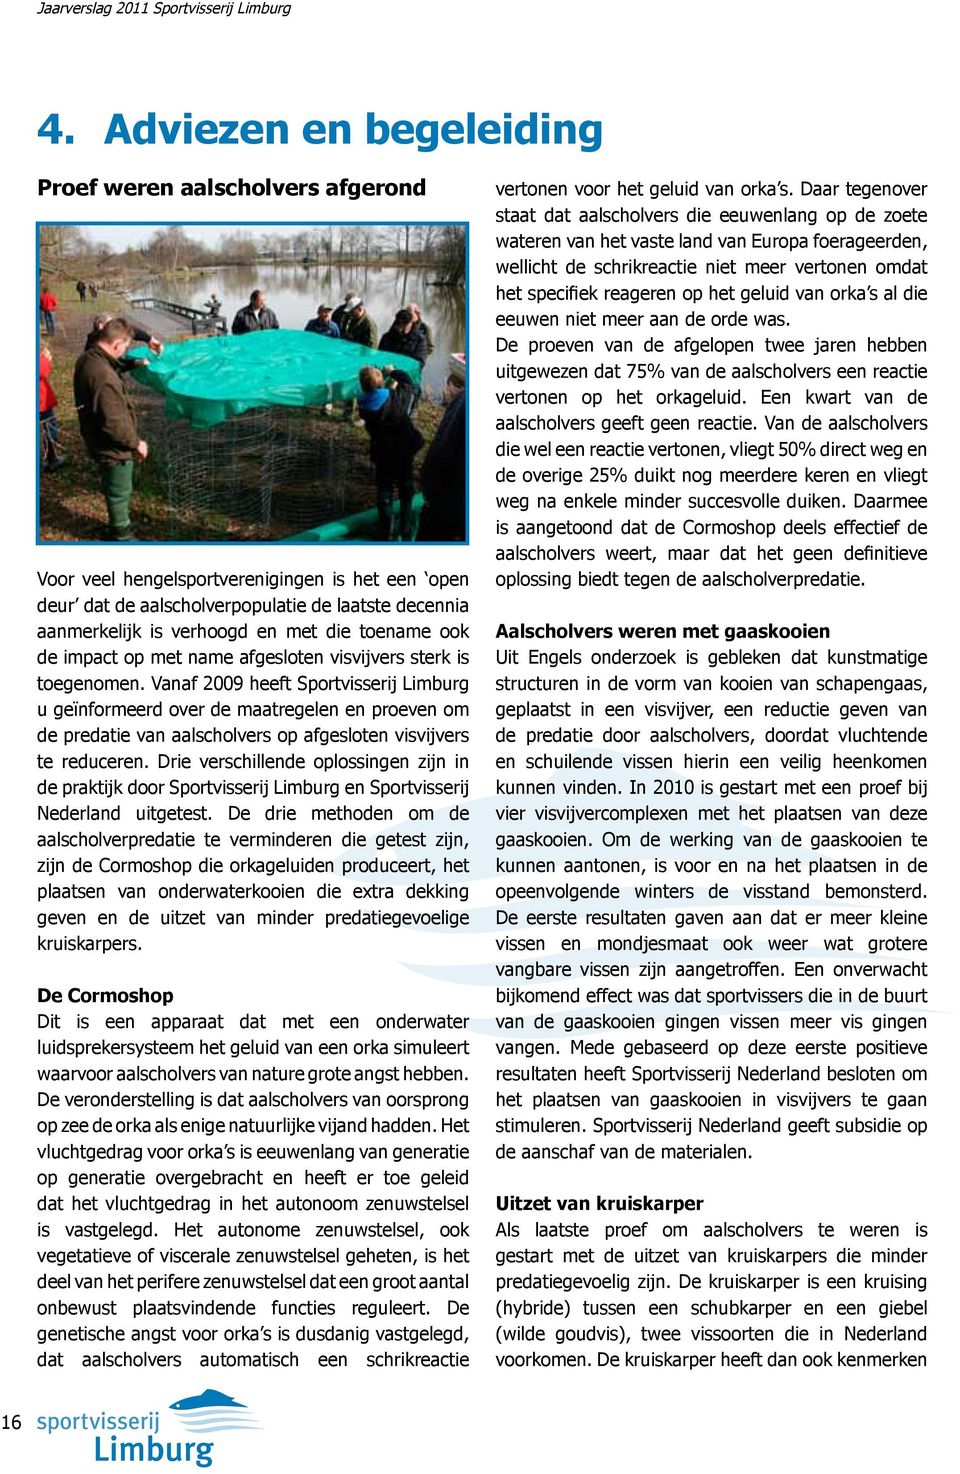 Vanaf 2009 heeft Sportvisserij Limburg u geïnformeerd over de maatregelen en proeven om de predatie van aalscholvers op afgesloten visvijvers te reduceren.